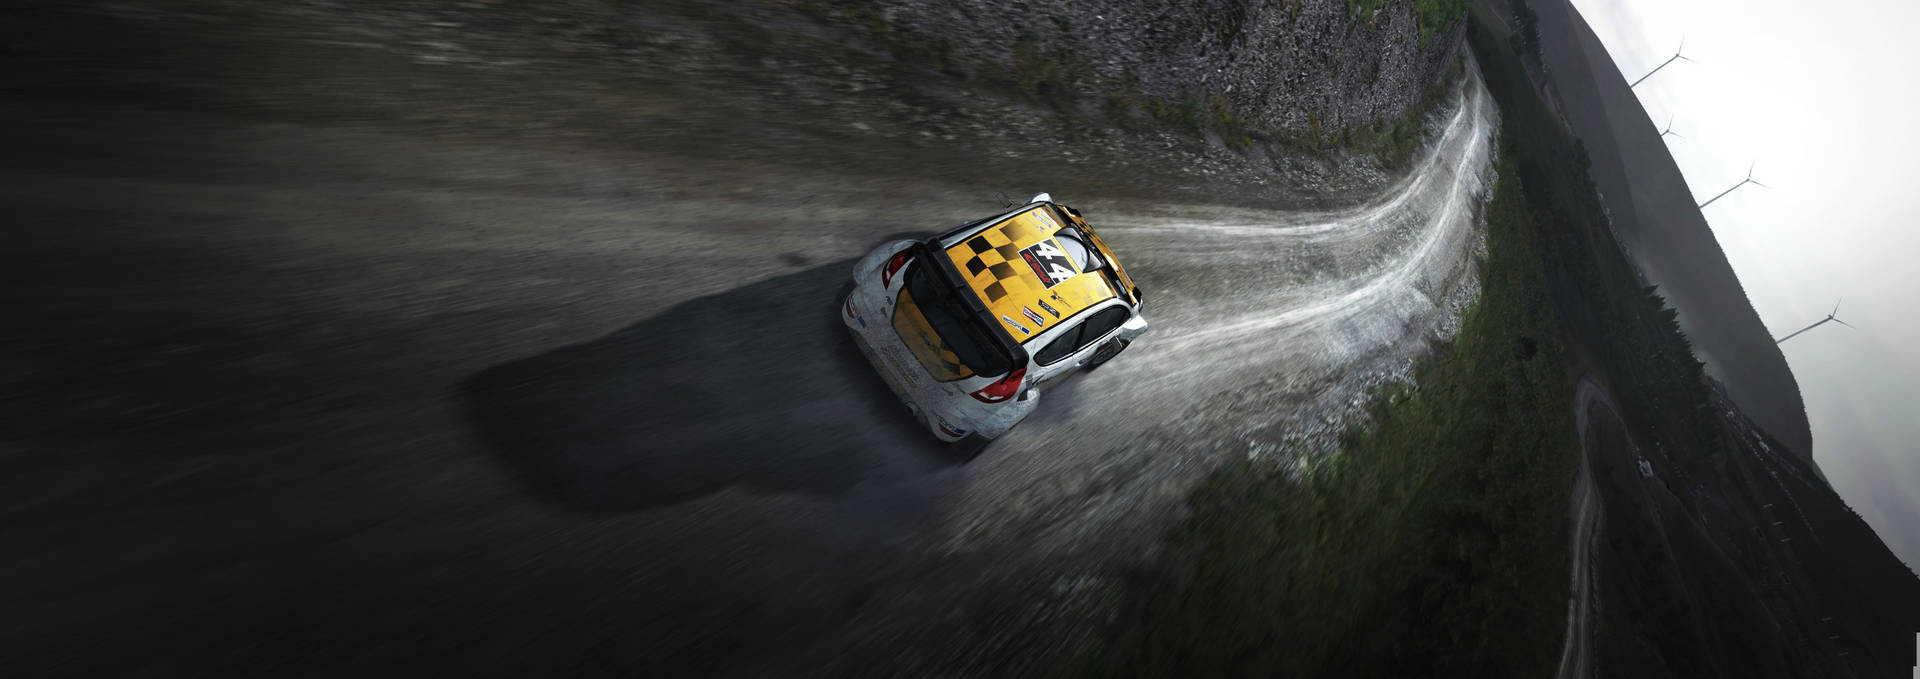 Dirt Rally Car In Muddy Road Wallpaper